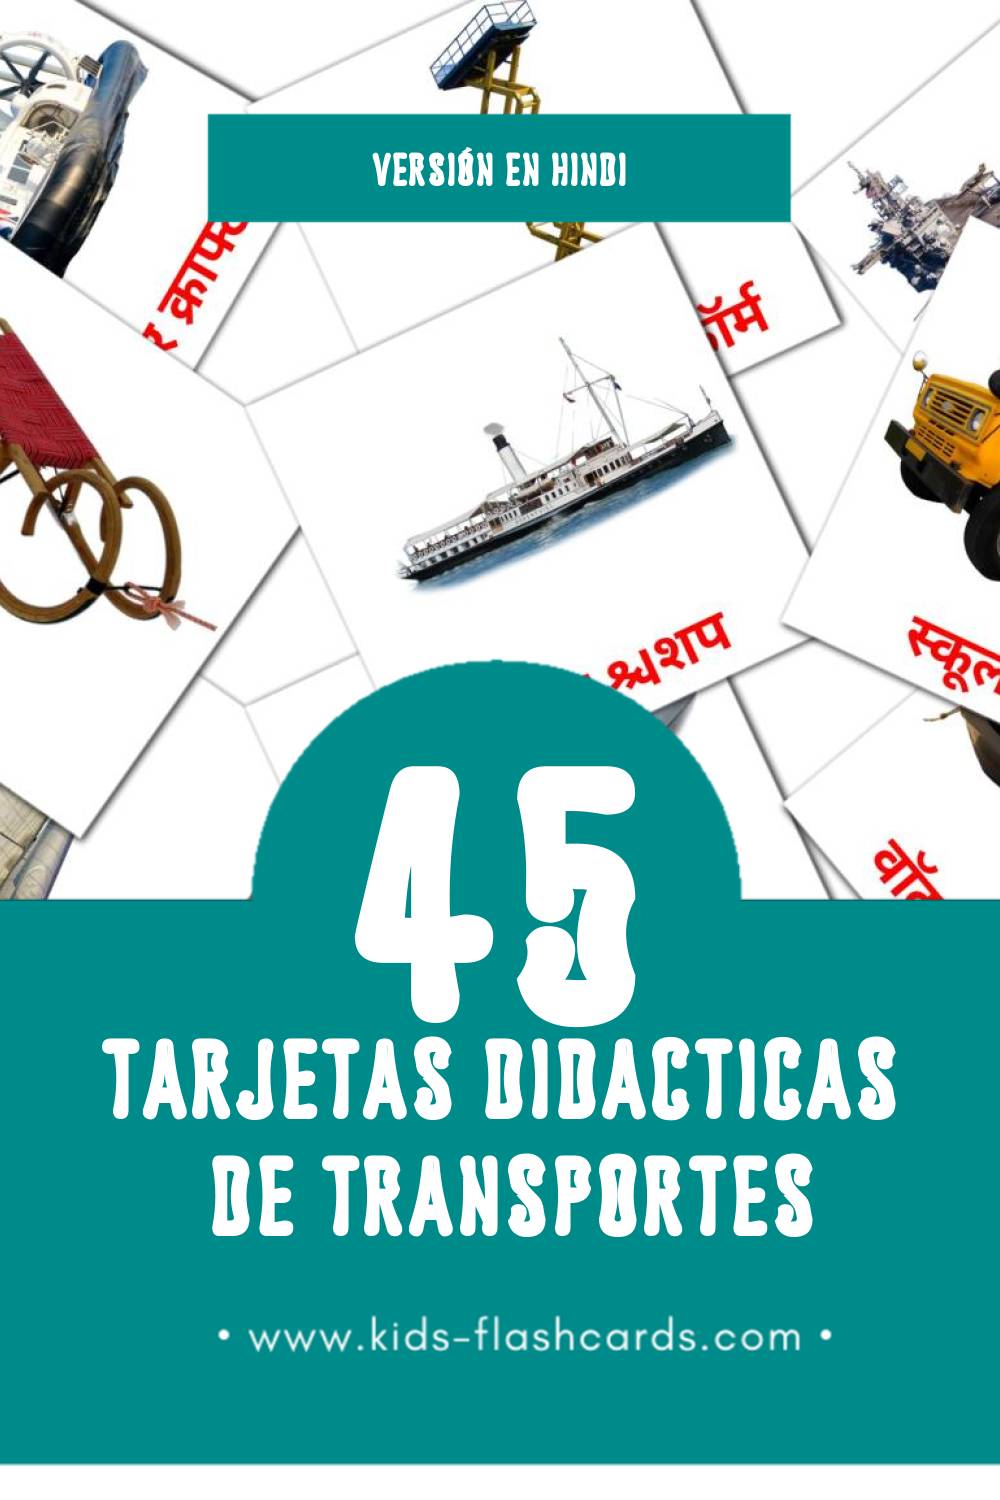 Tarjetas visuales de परिवहन  para niños pequeños (45 tarjetas en Hindi)